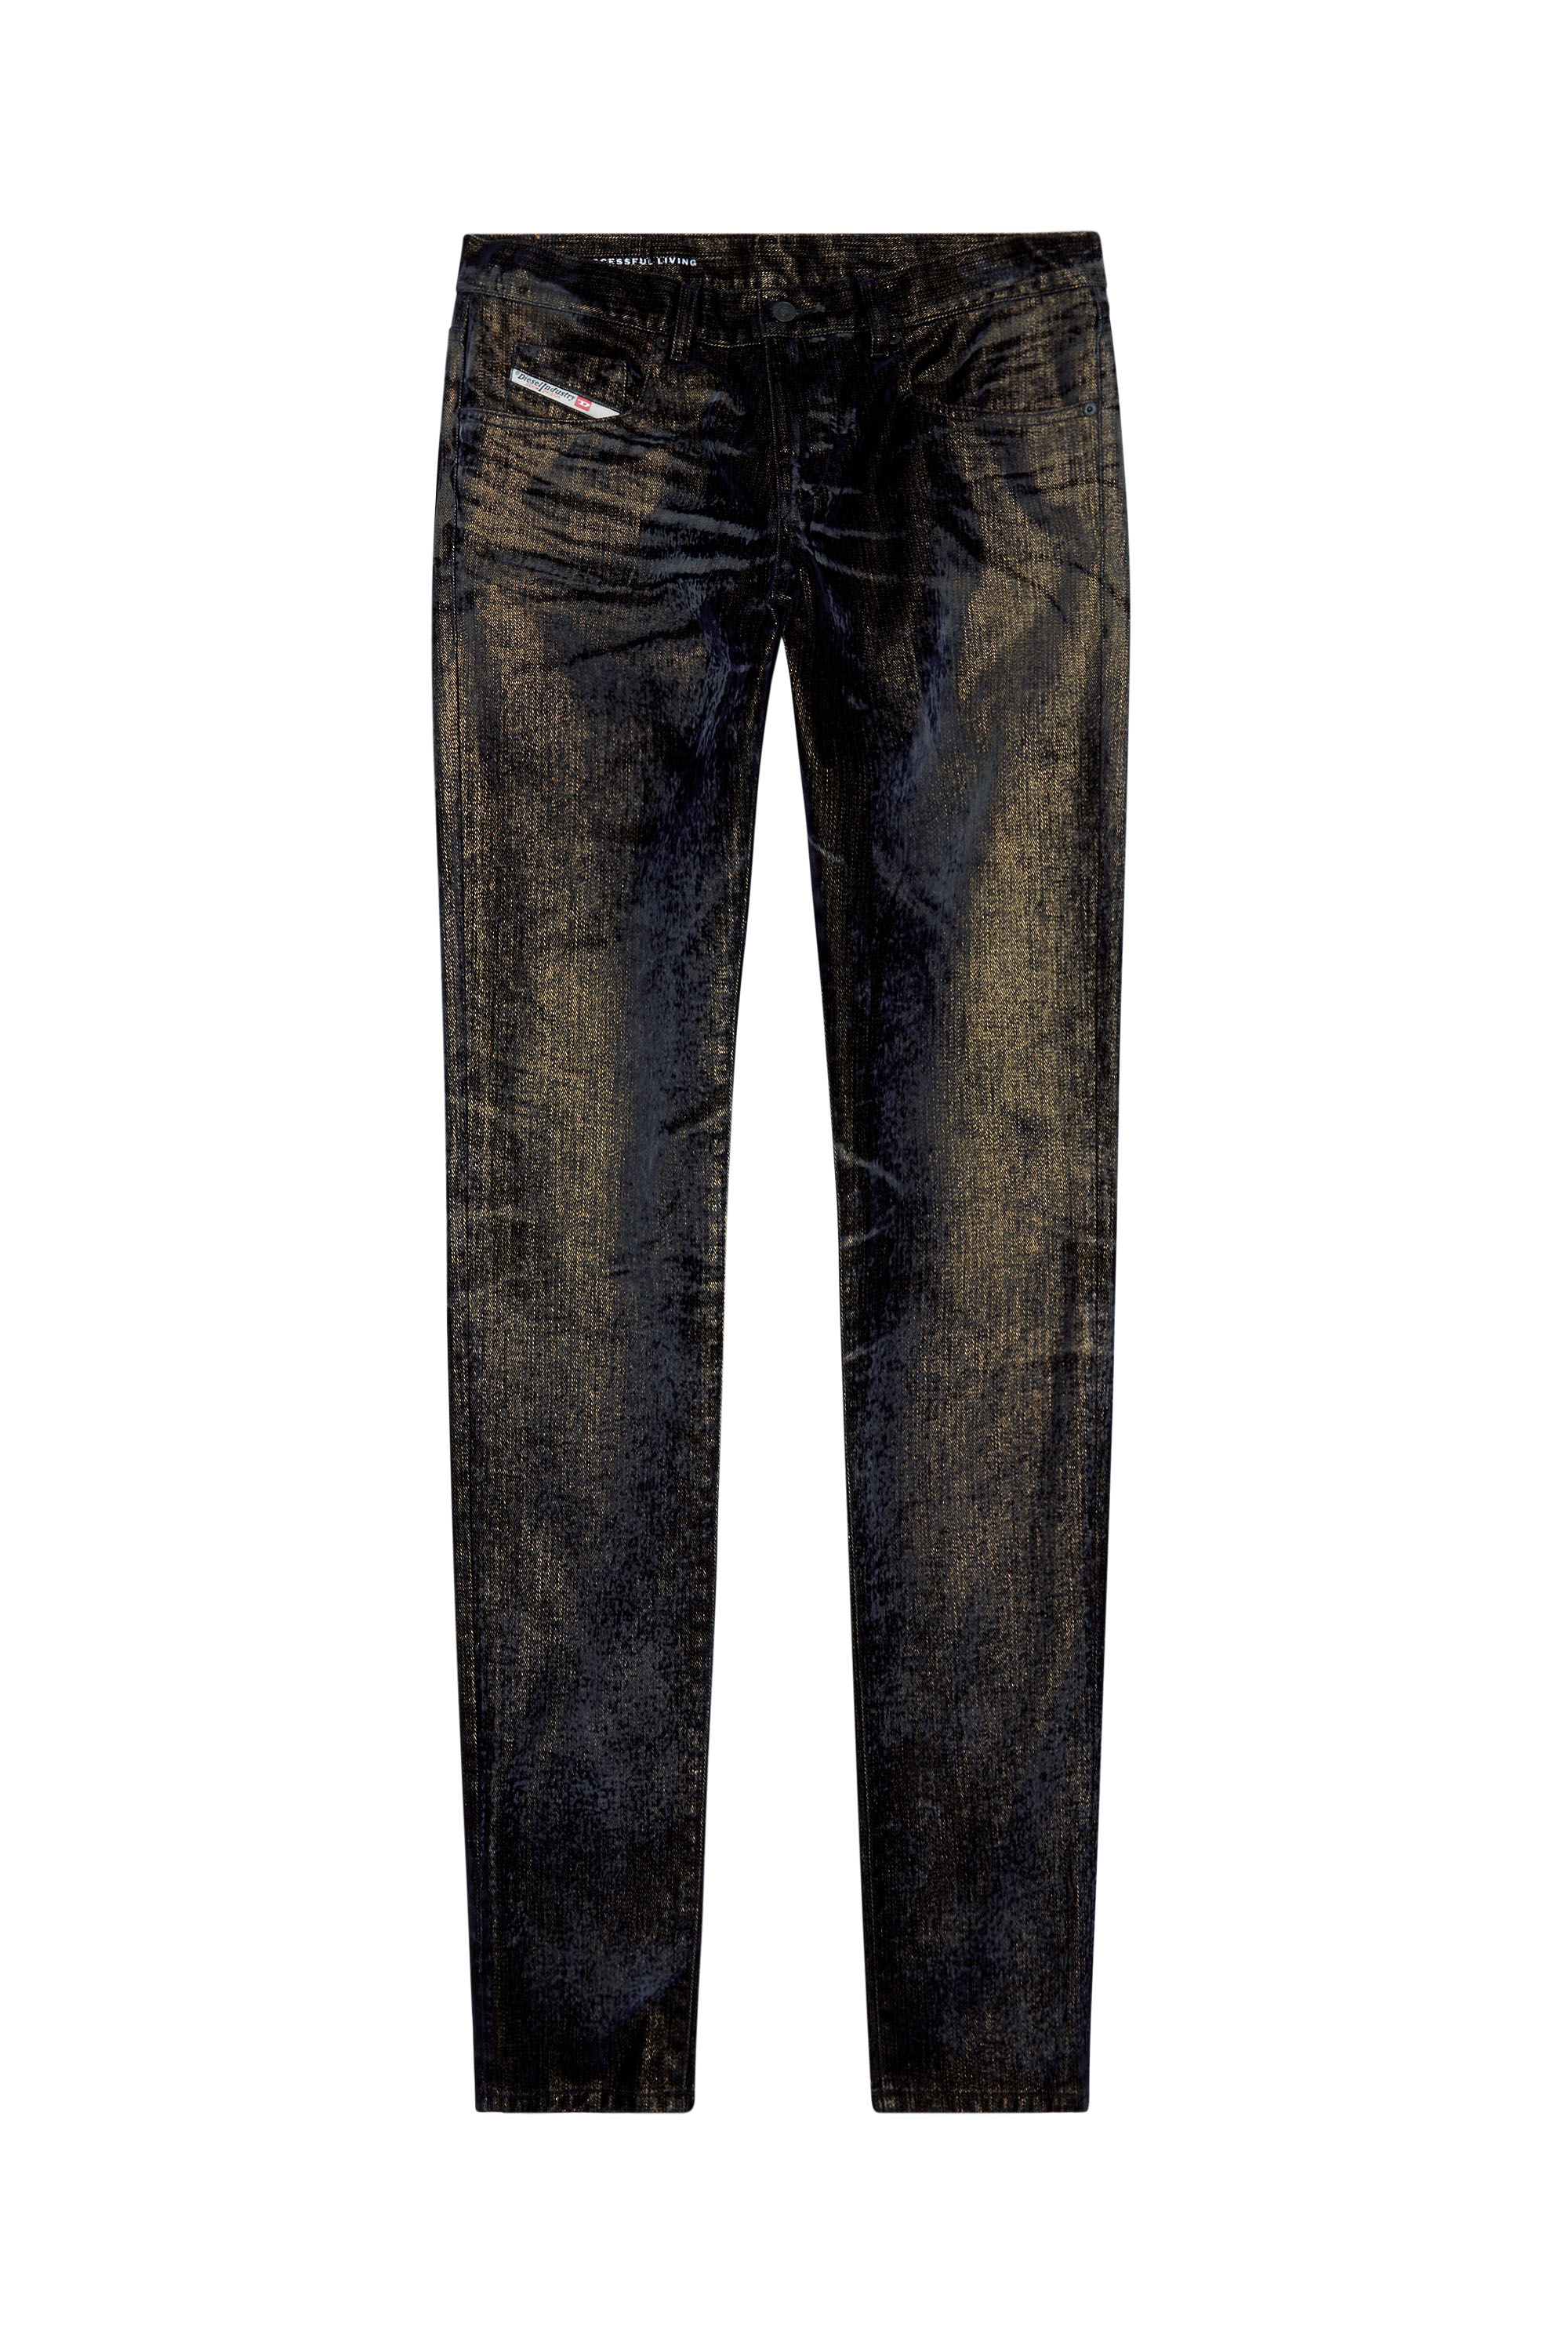 Diesel - Slim Jeans 2019 D-Strukt 09I49, Black/Dark grey - Image 3